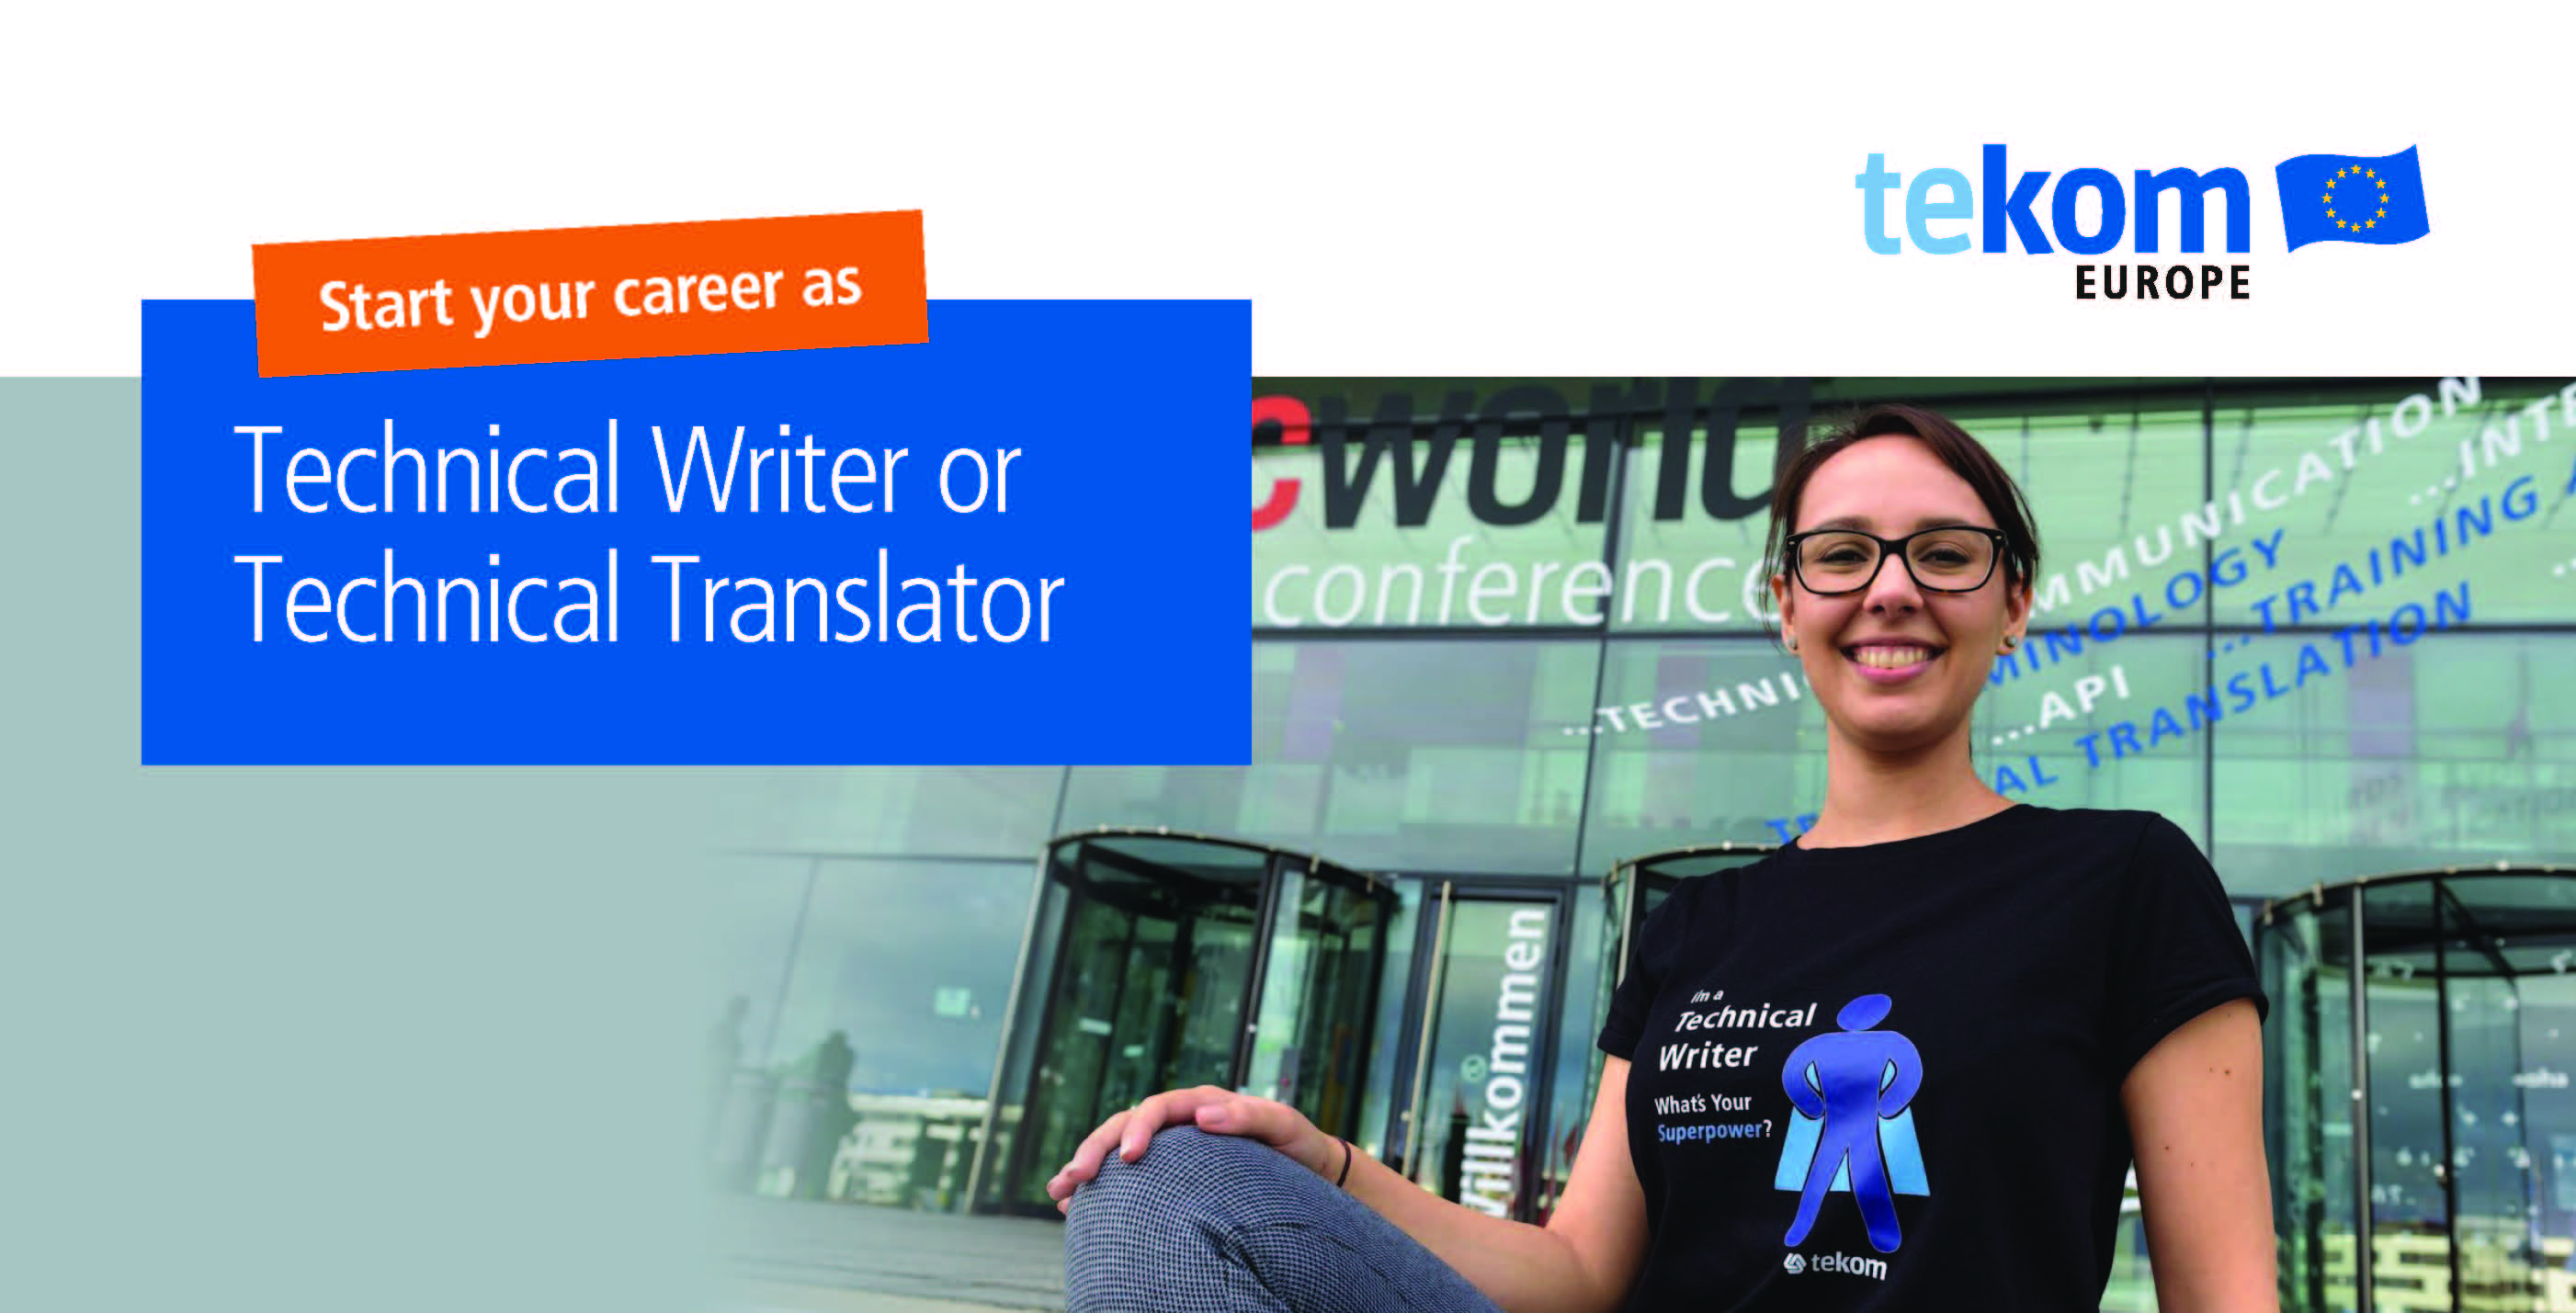 tekom Europe e.V.: Become a Technical Writer